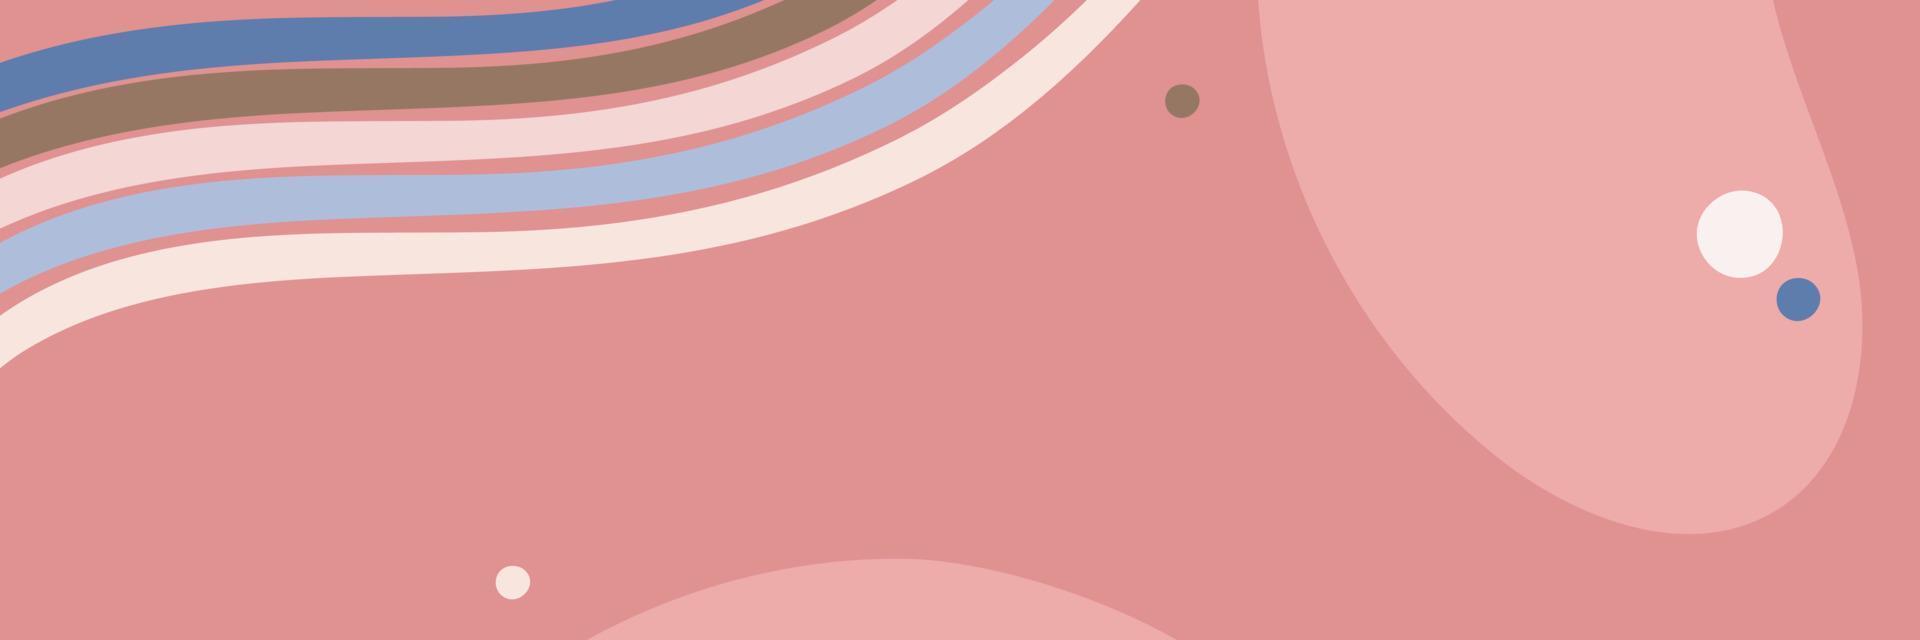 banner de vetor abstrato com formas ovais e linhas em tons pastel